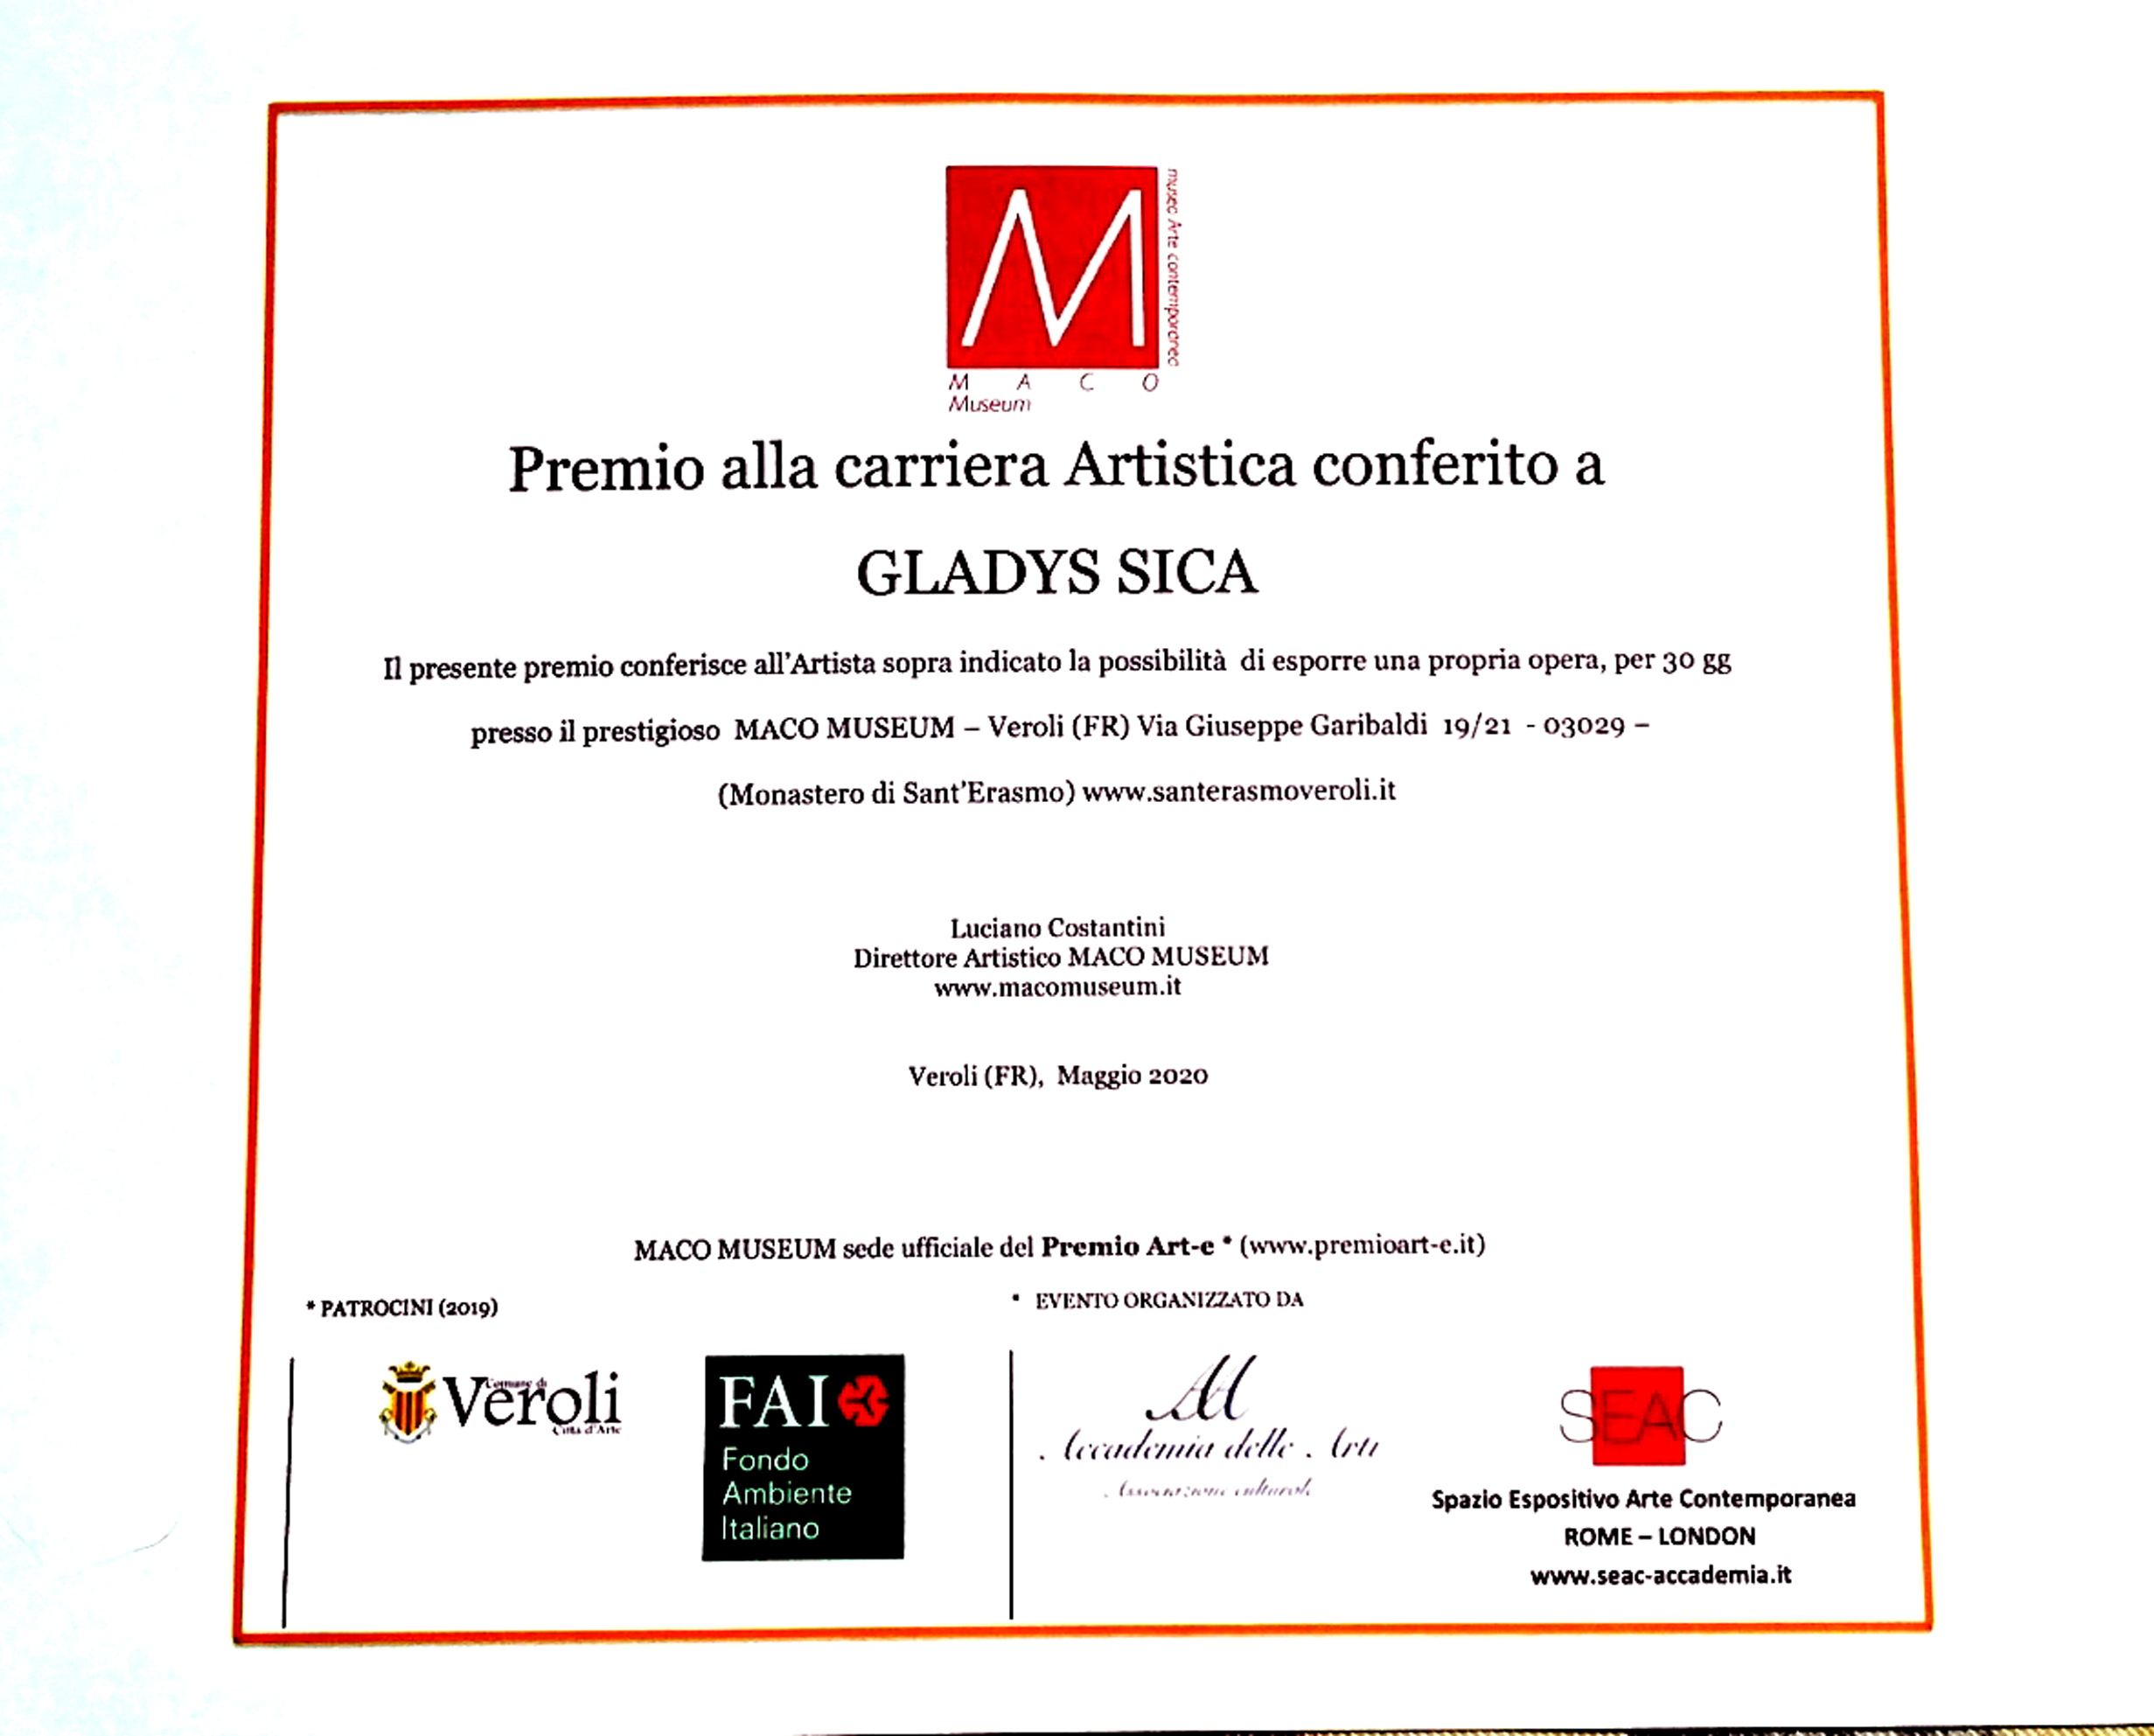 2019 - Premio alla Carriera artistica,  Maco Museum, a cura del Direttore Luciano Costantino, Veroli.